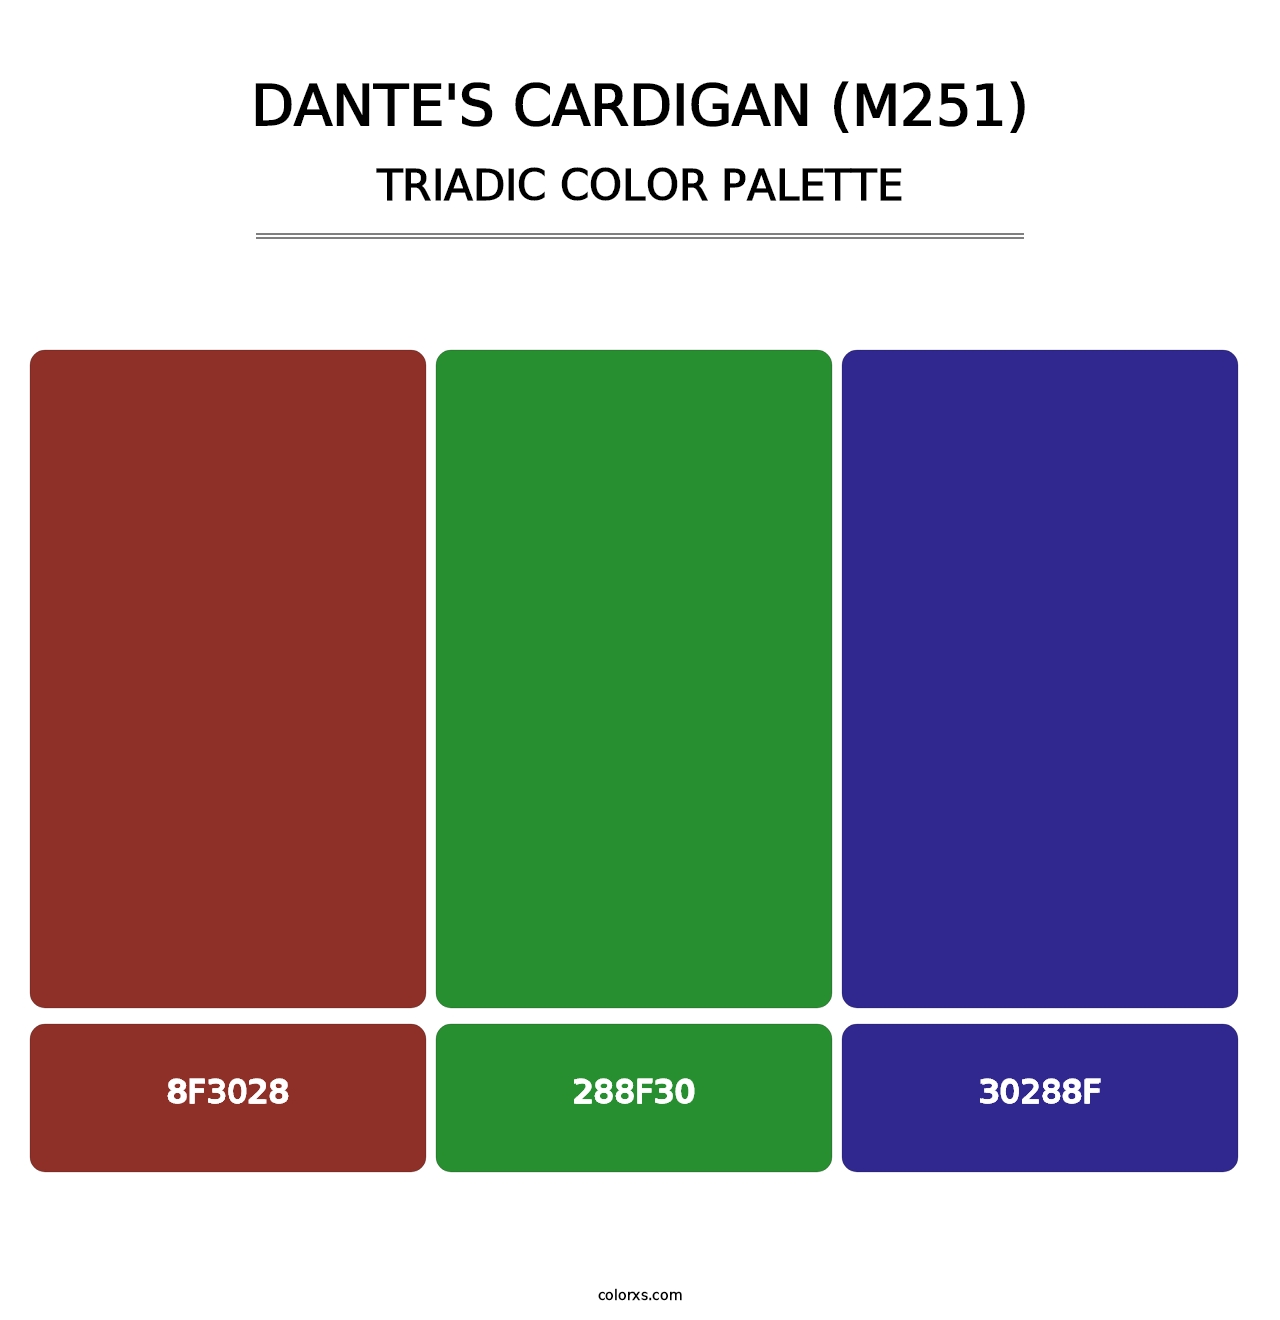 Dante's Cardigan (M251) - Triadic Color Palette